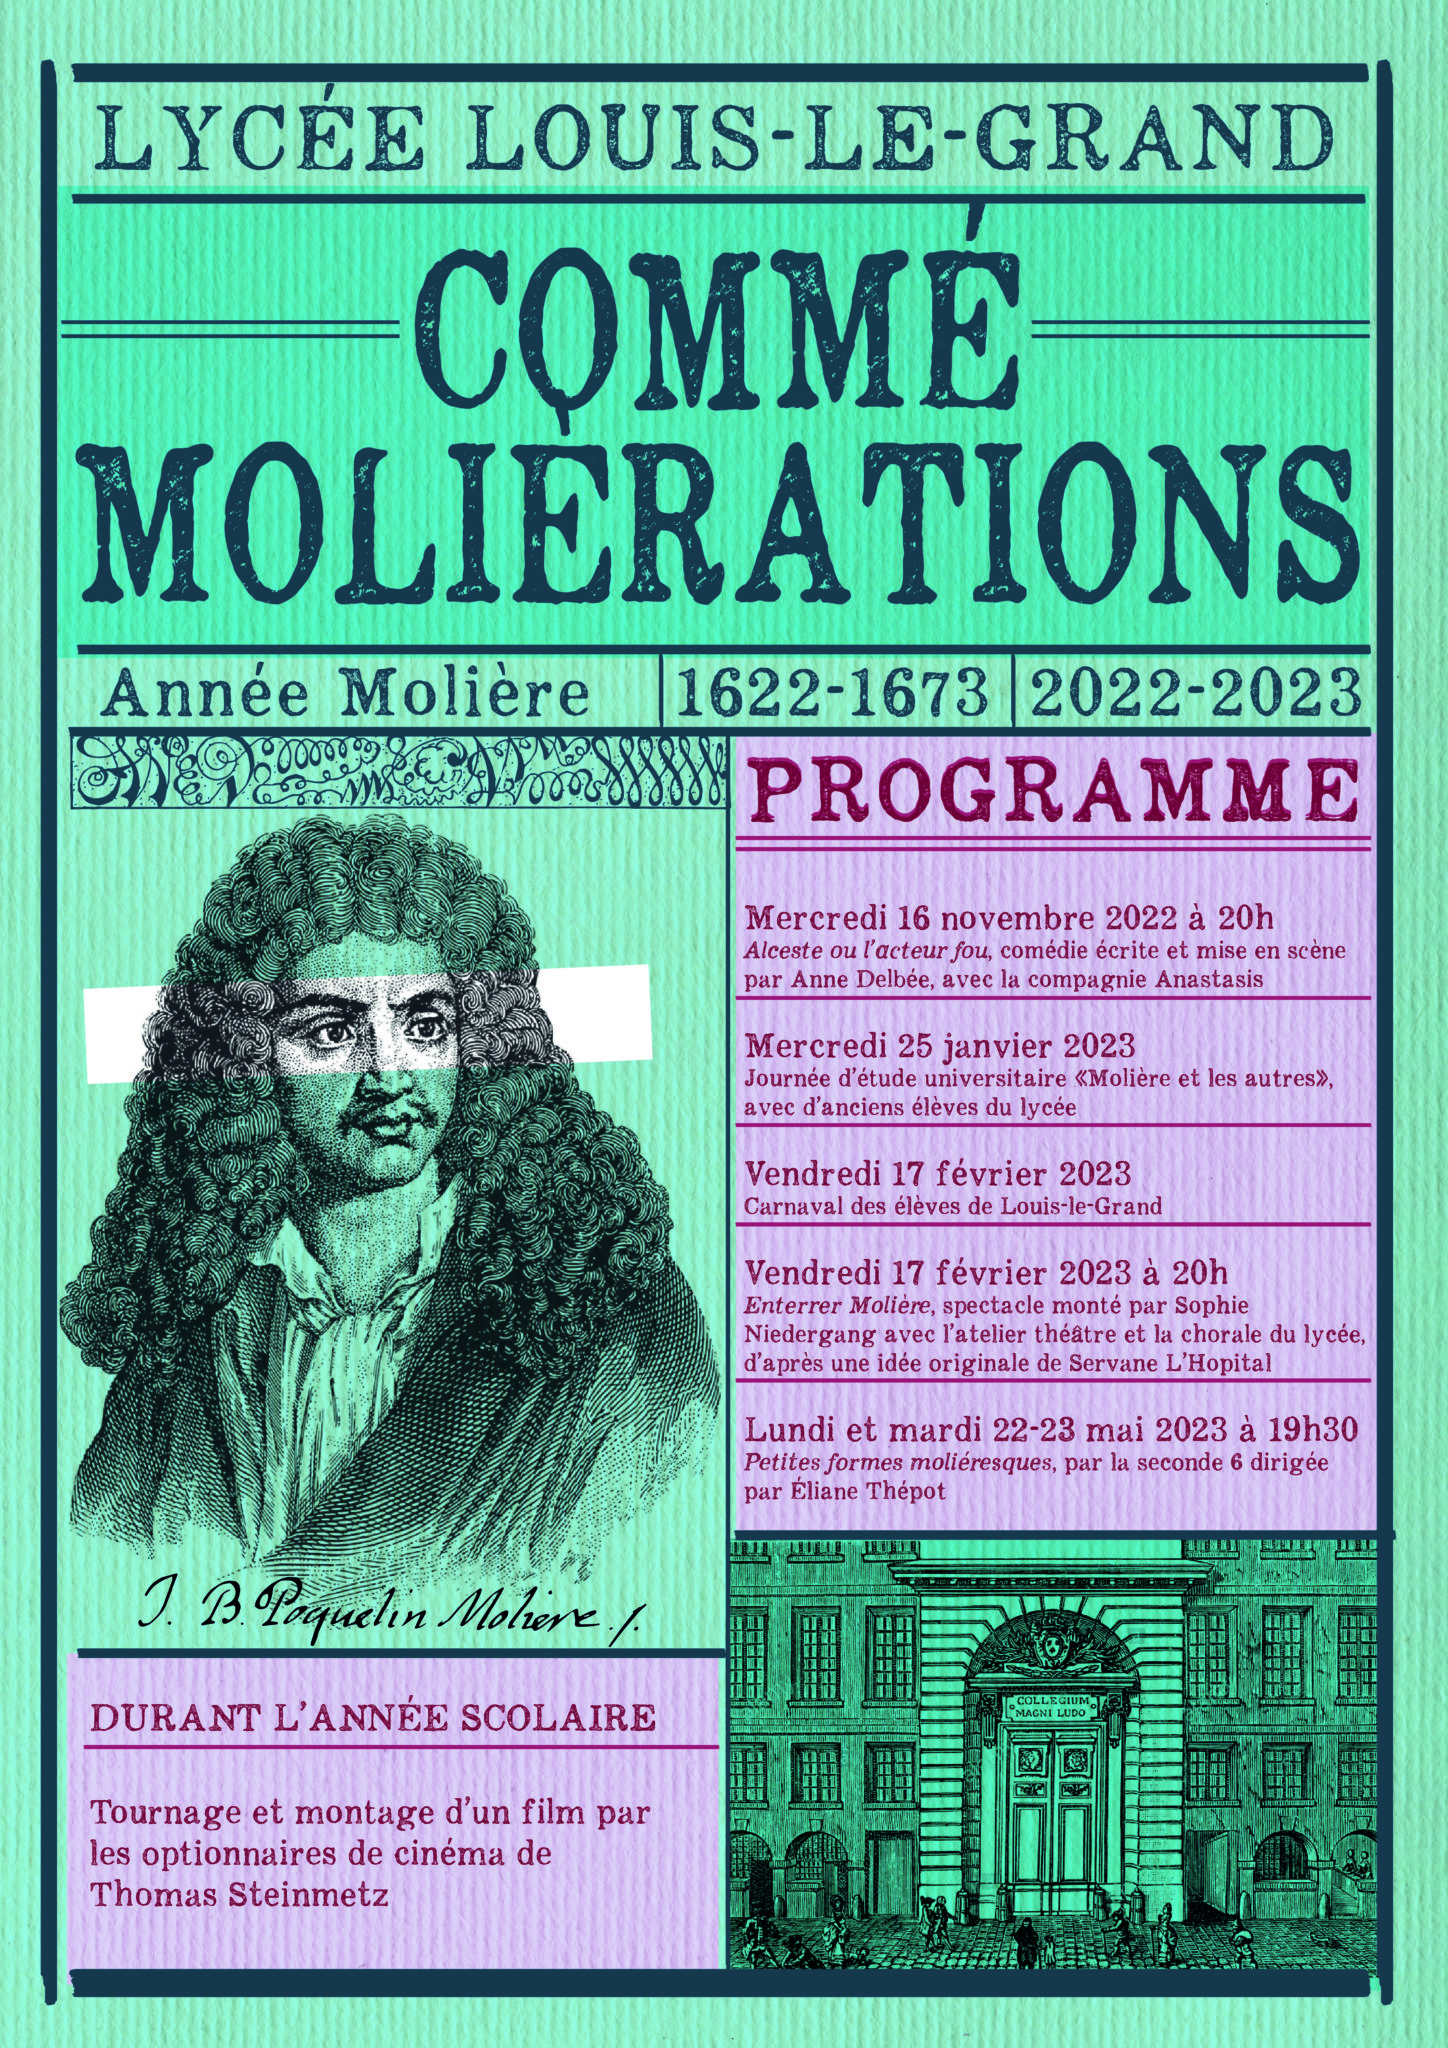 L’année Molière à Louis-le-Grand